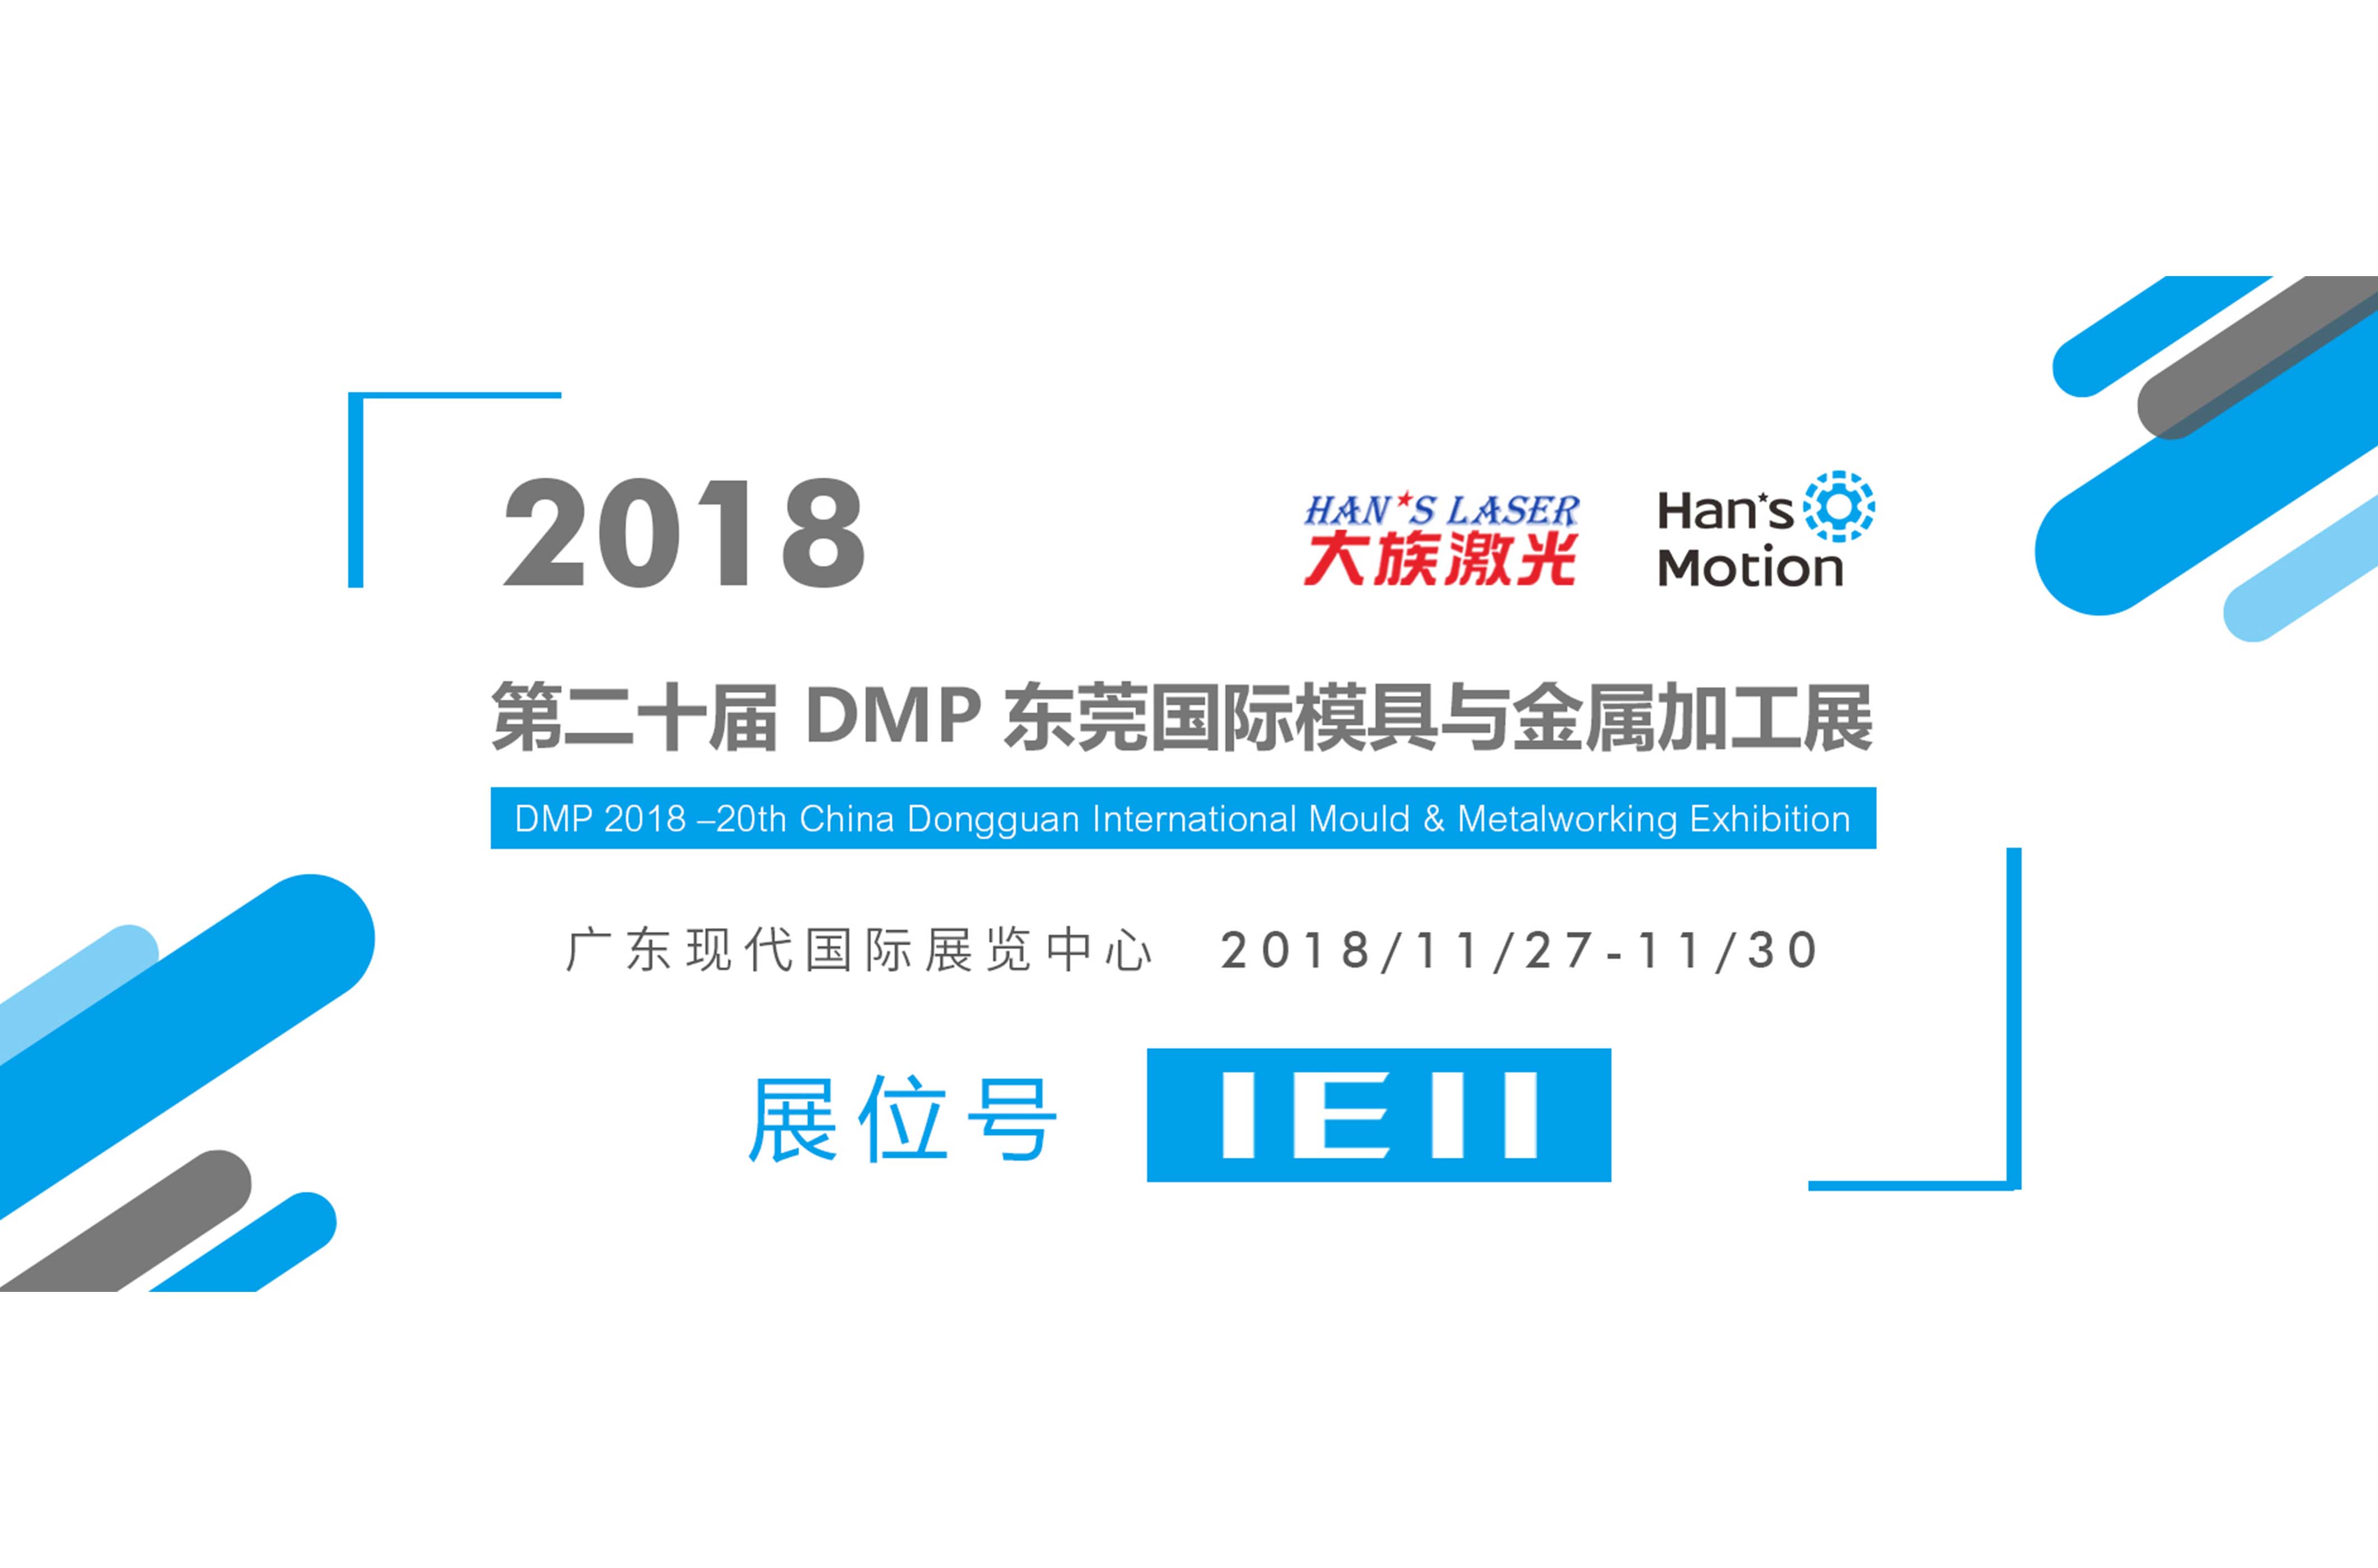 第二十届DMP东莞国际模具与金属加工展 大族谐波欢迎你参观